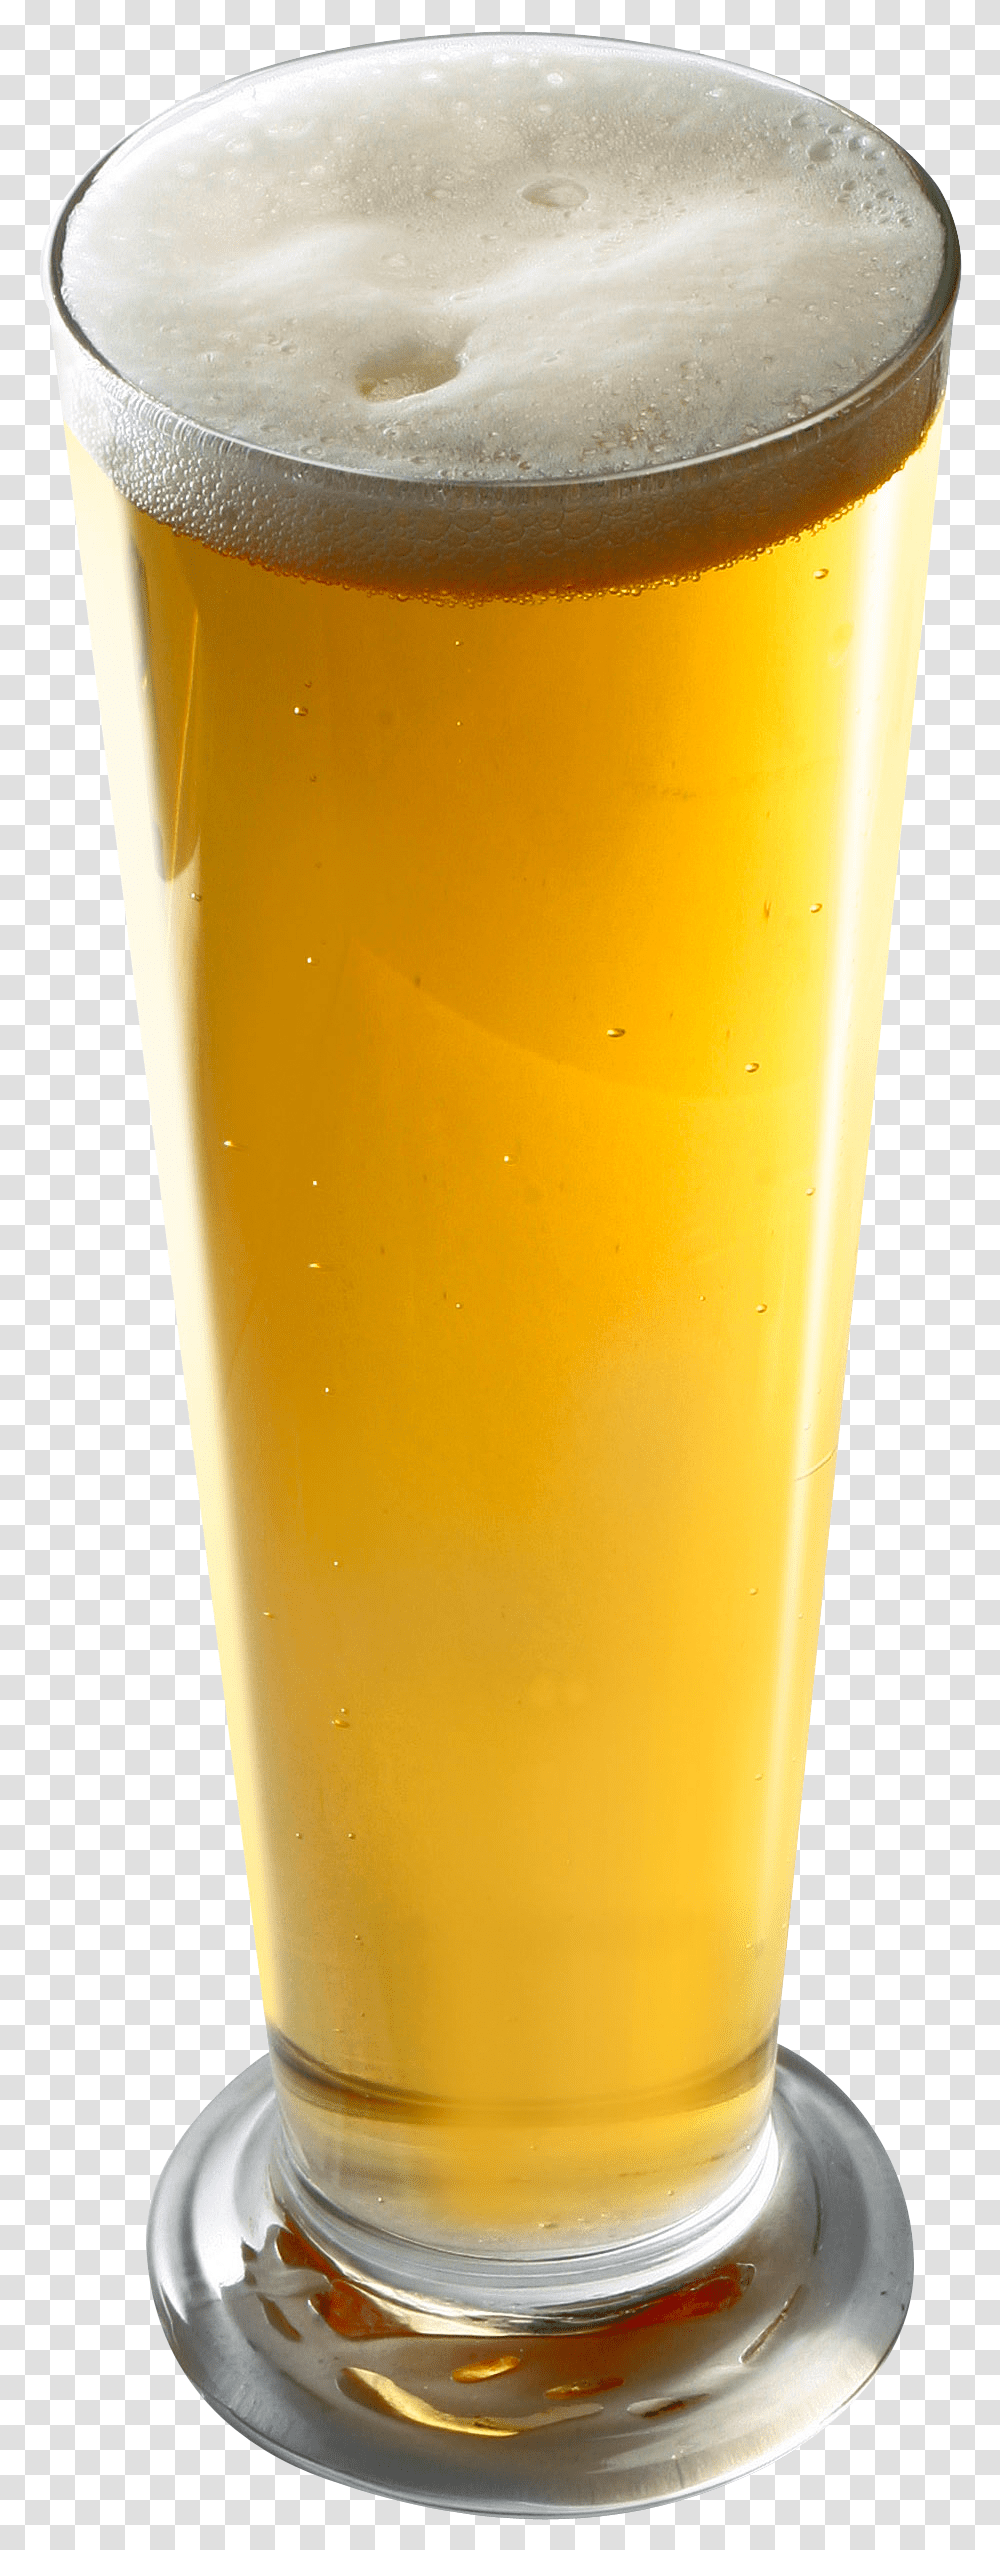 Beer Image Pint, Alcohol, Beverage, Drink, Glass Transparent Png